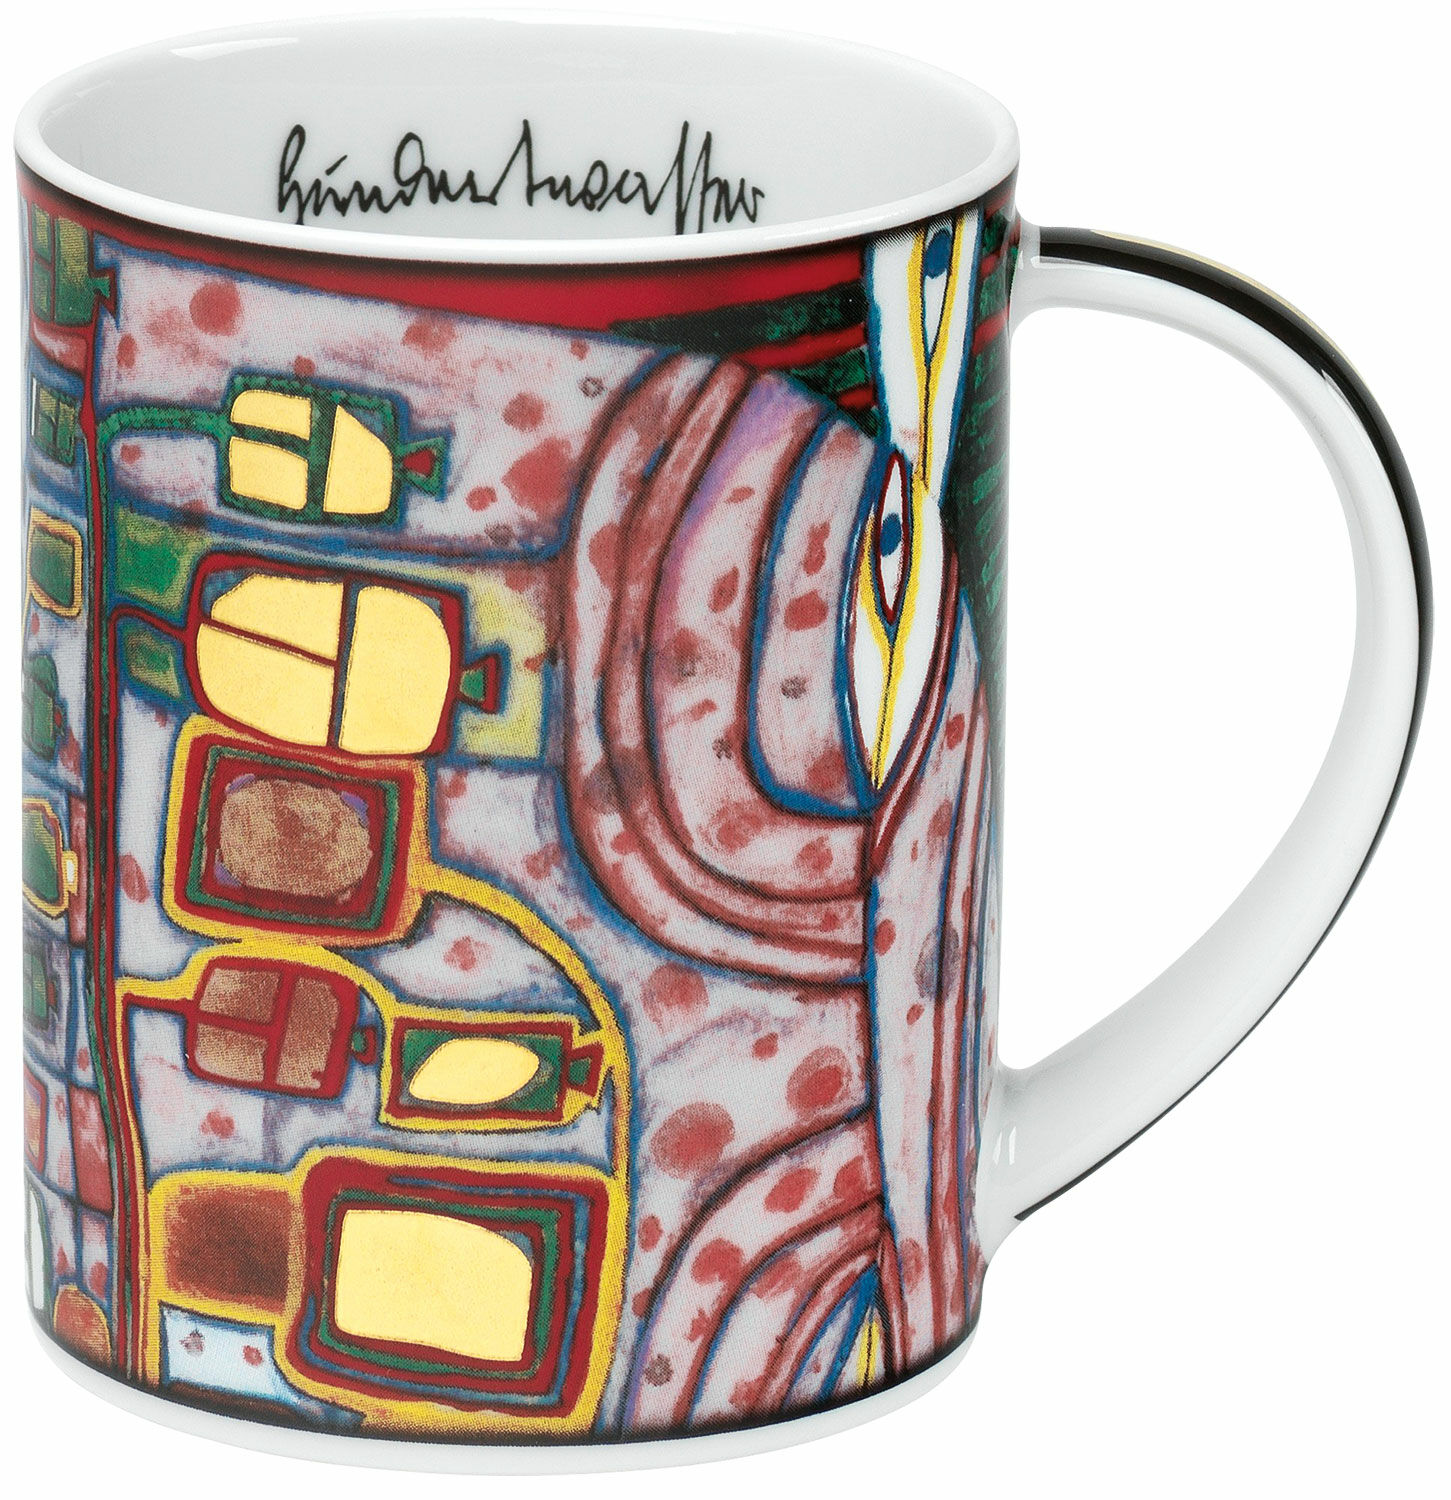 Magic mug "(743) Tree Man Vase", porcelain by Friedensreich Hundertwasser